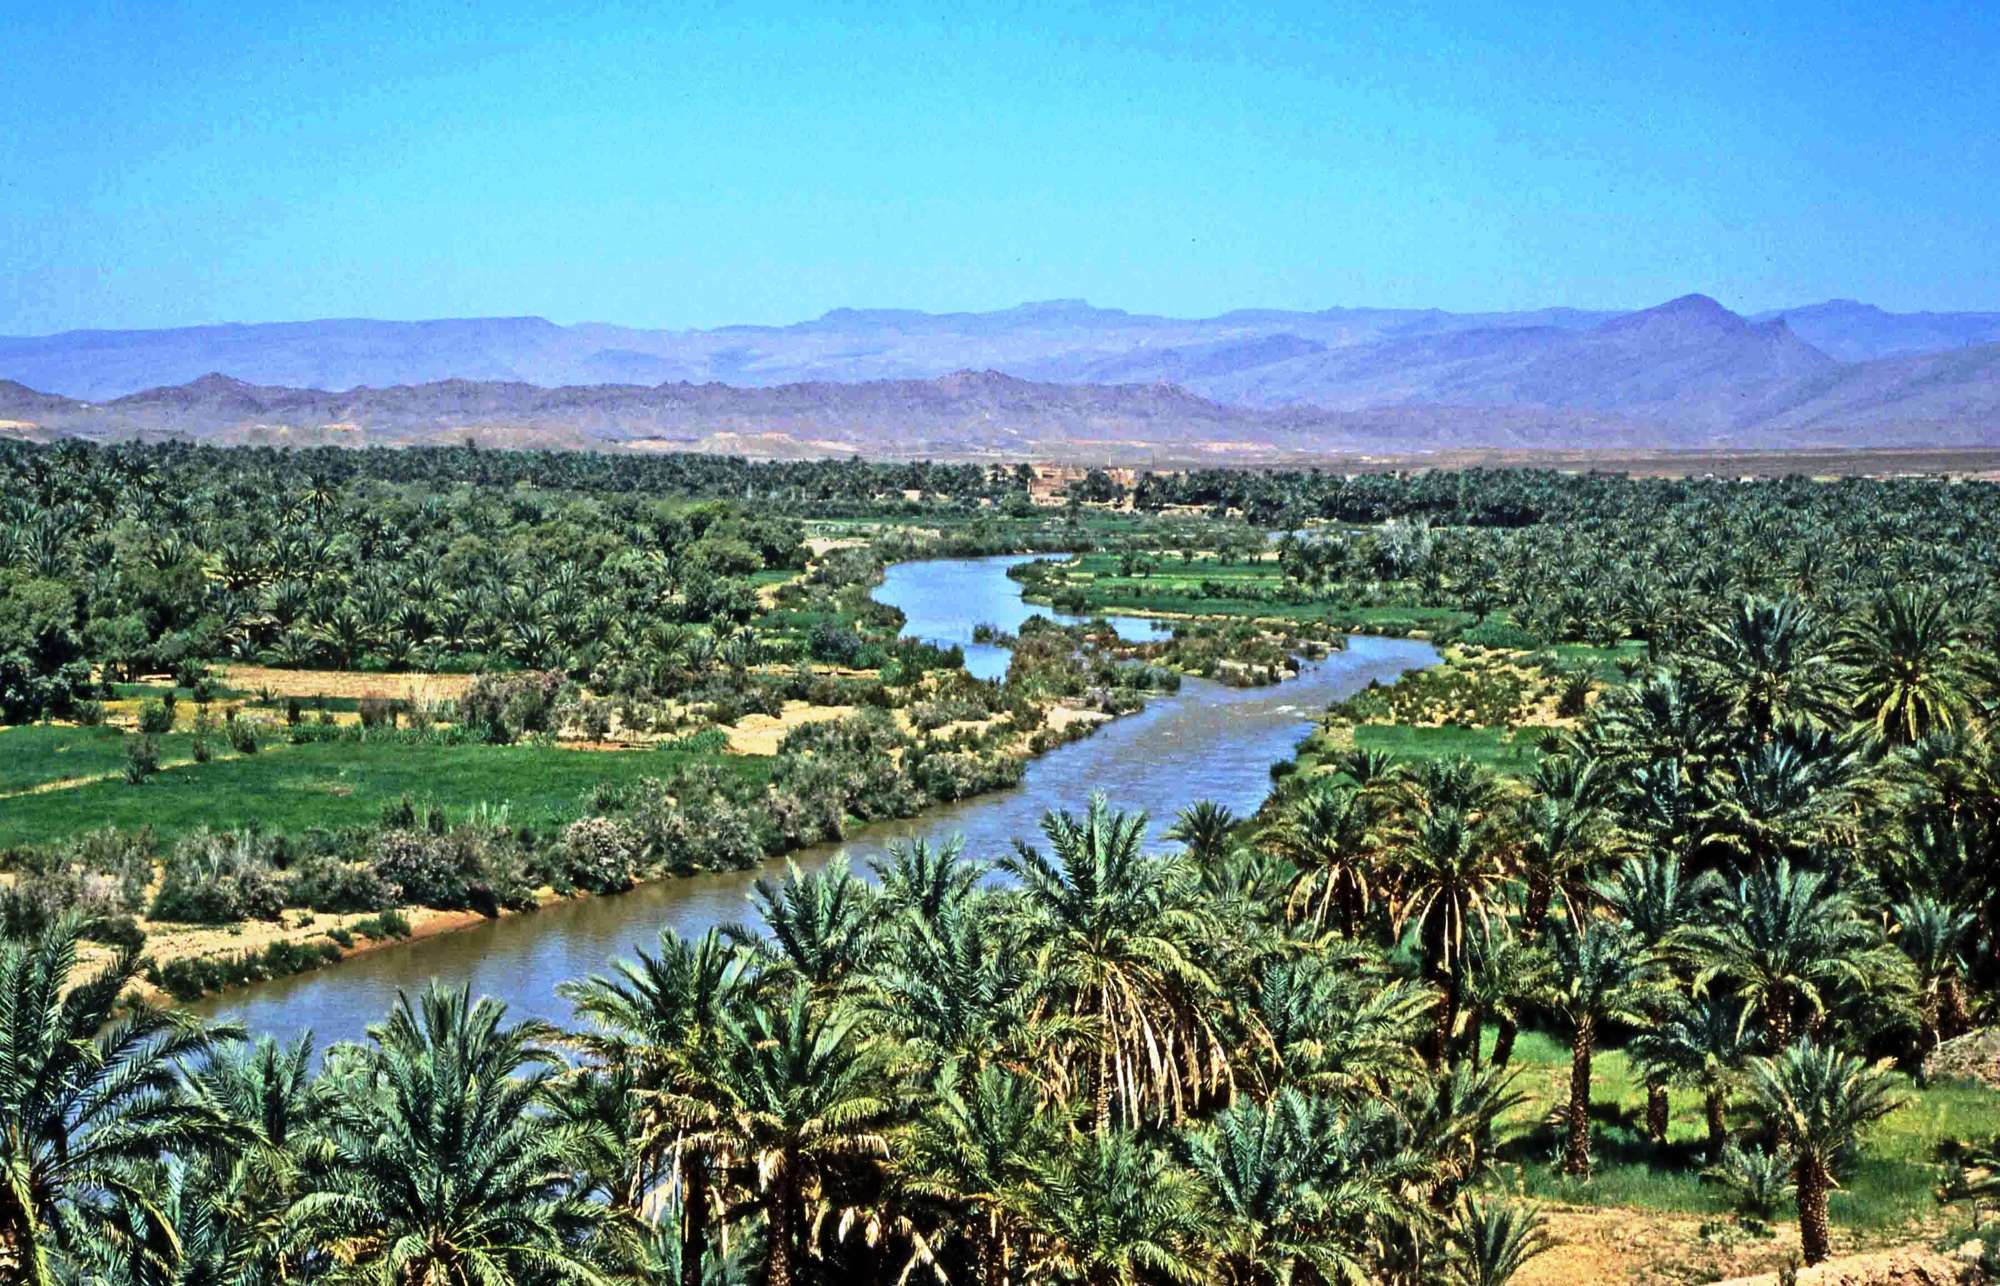 02 days Morocco desert tour to Zagora Sahara from Marrakech